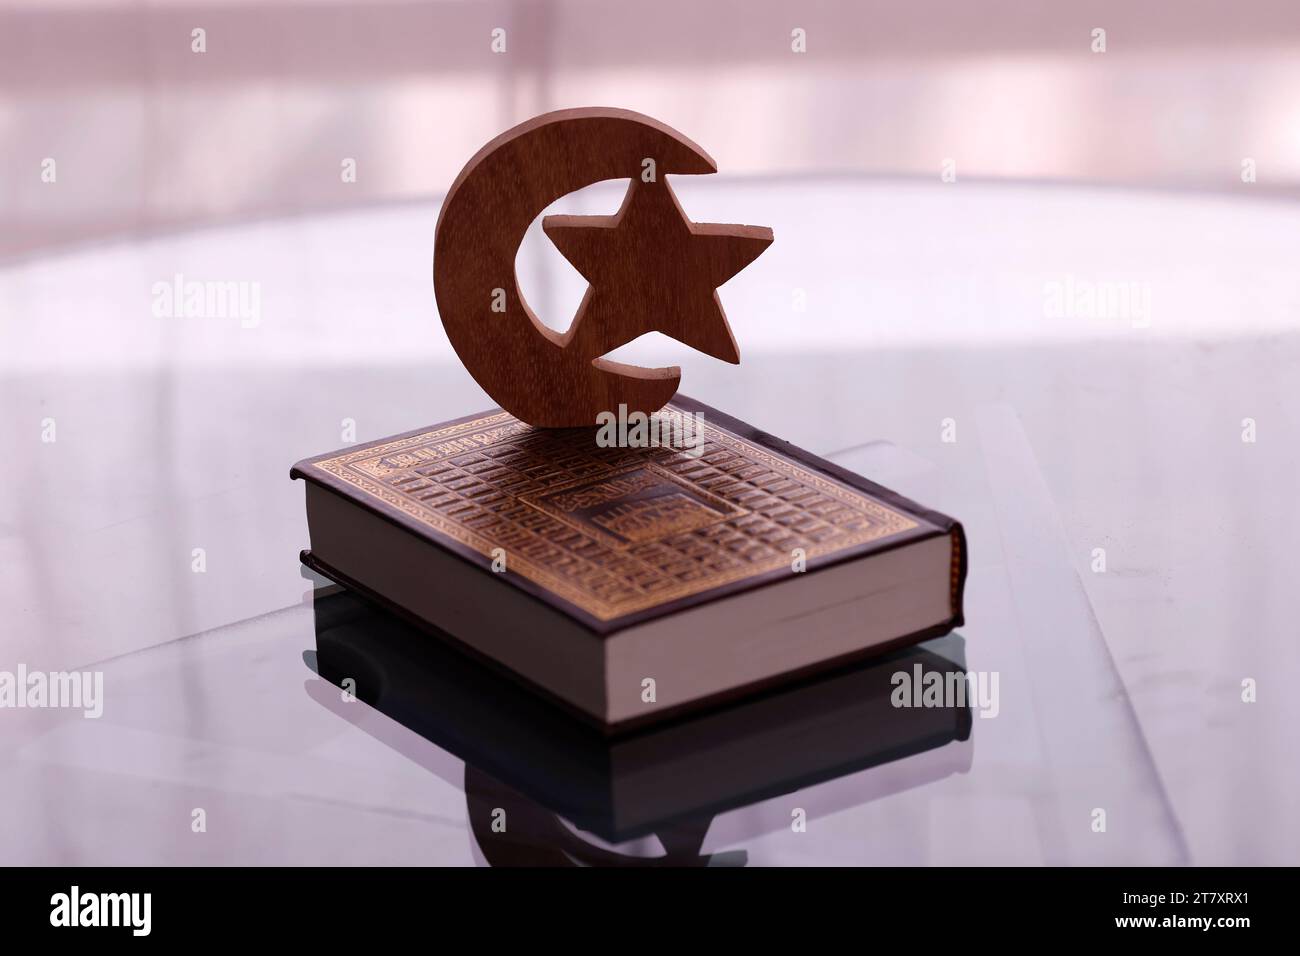 Stern, Halbmond und Koran drei Symbole für Islam, Vietnam, Indochina, Südostasien, Asien Stockfoto